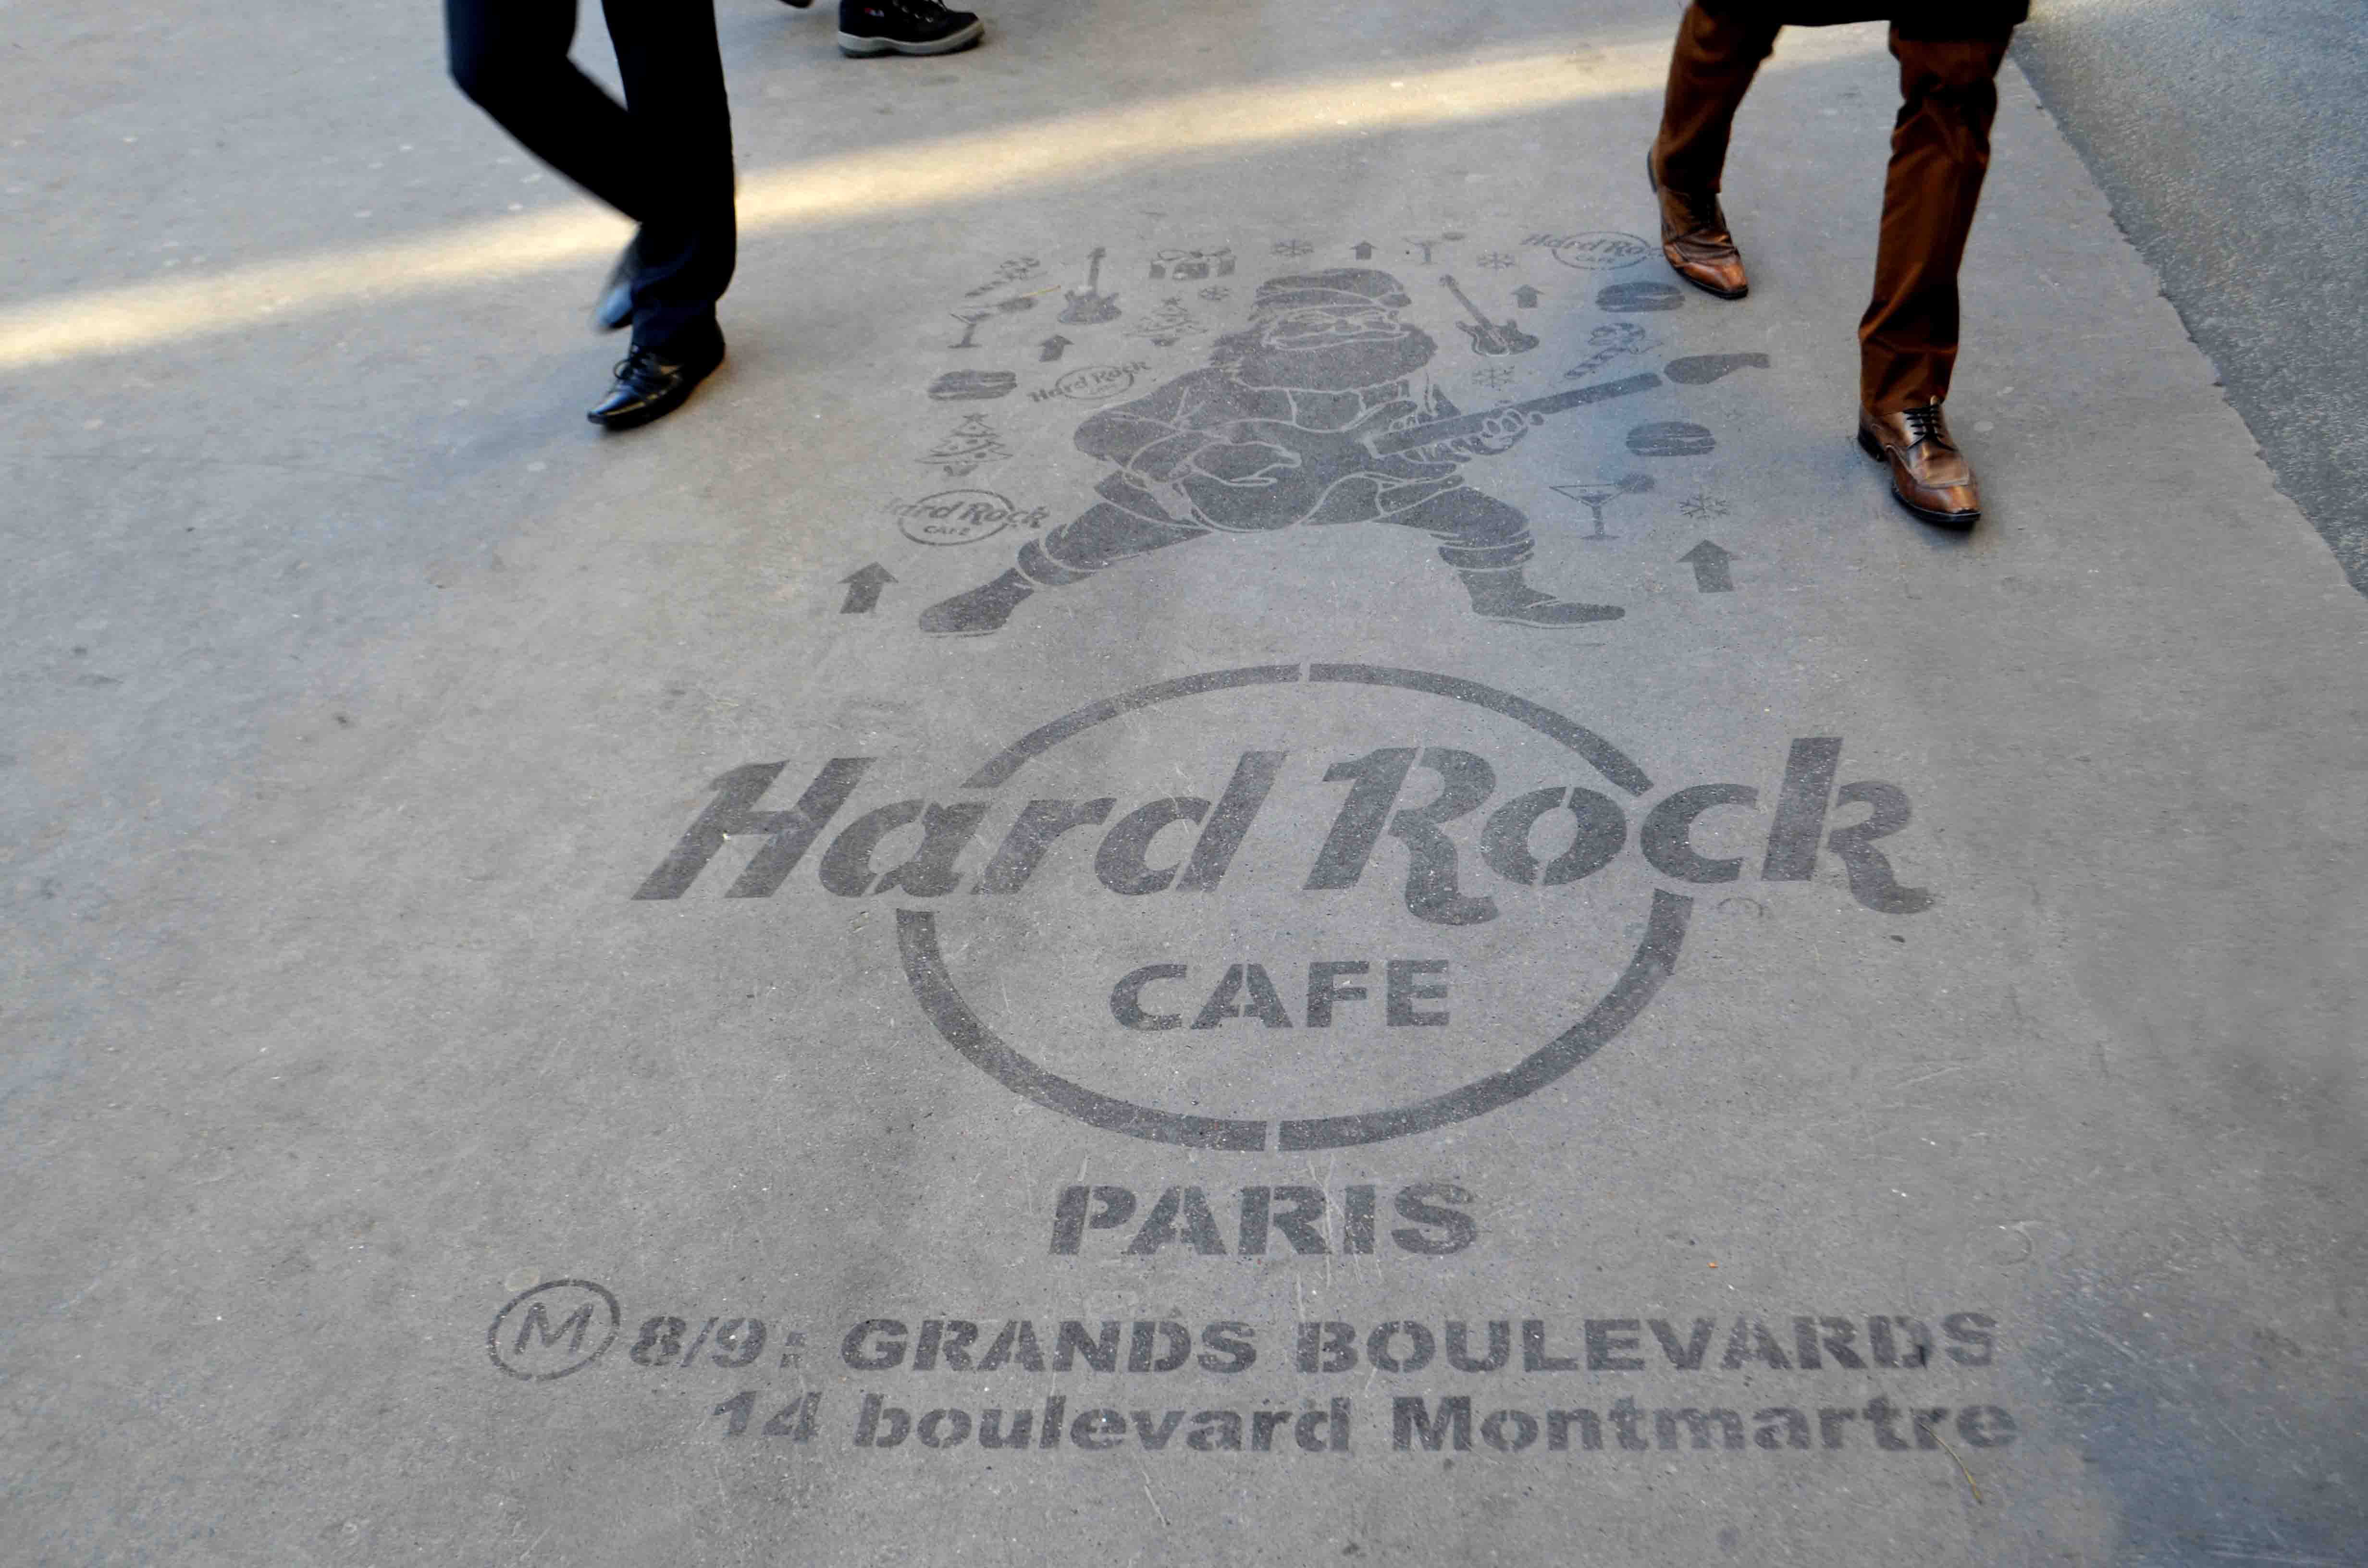 Campagne de CleanTag pour Hard Rock Cafe